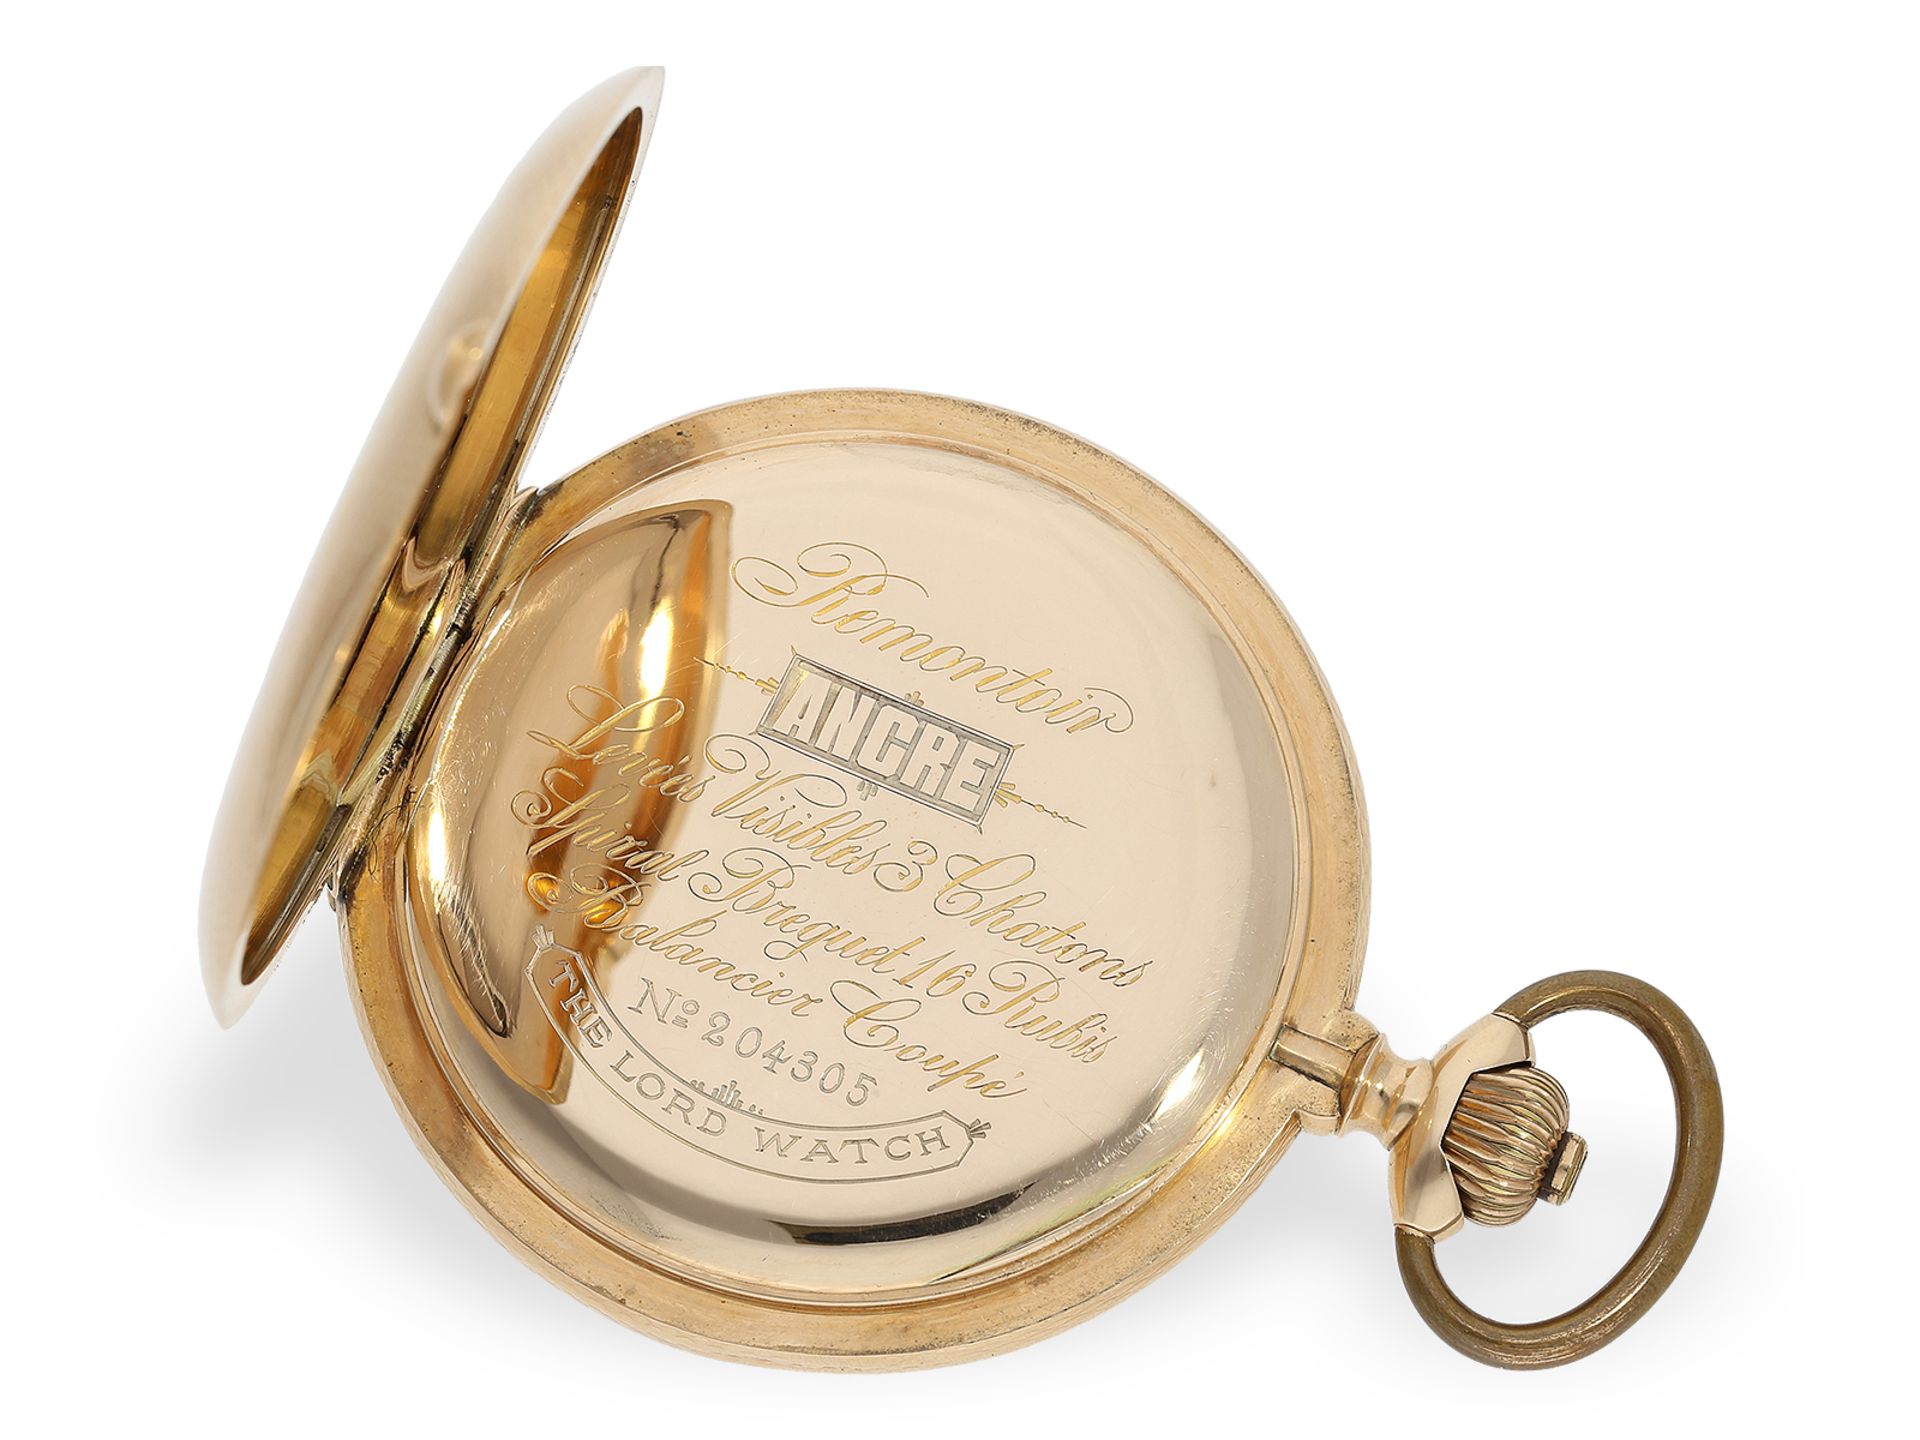 Taschenuhr: Außergewöhnlich große und schwere Präzisionstaschenuhr "The Lord Watch", Schweiz um 1890 - Bild 3 aus 7